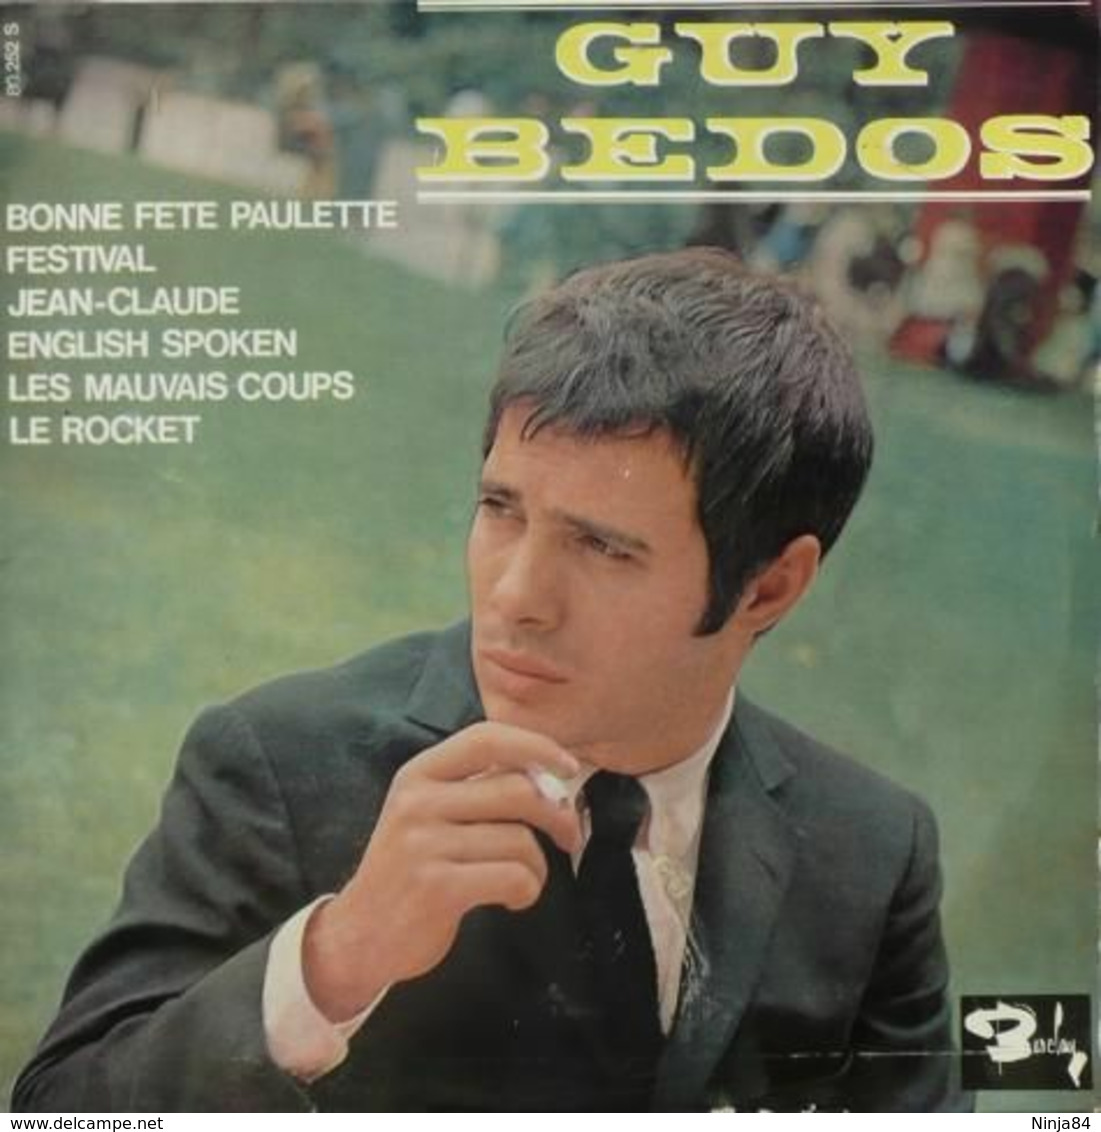 LP 25 CM (10")  Guy Bedos  "  Bonne Fête Paulette  " - Formatos Especiales